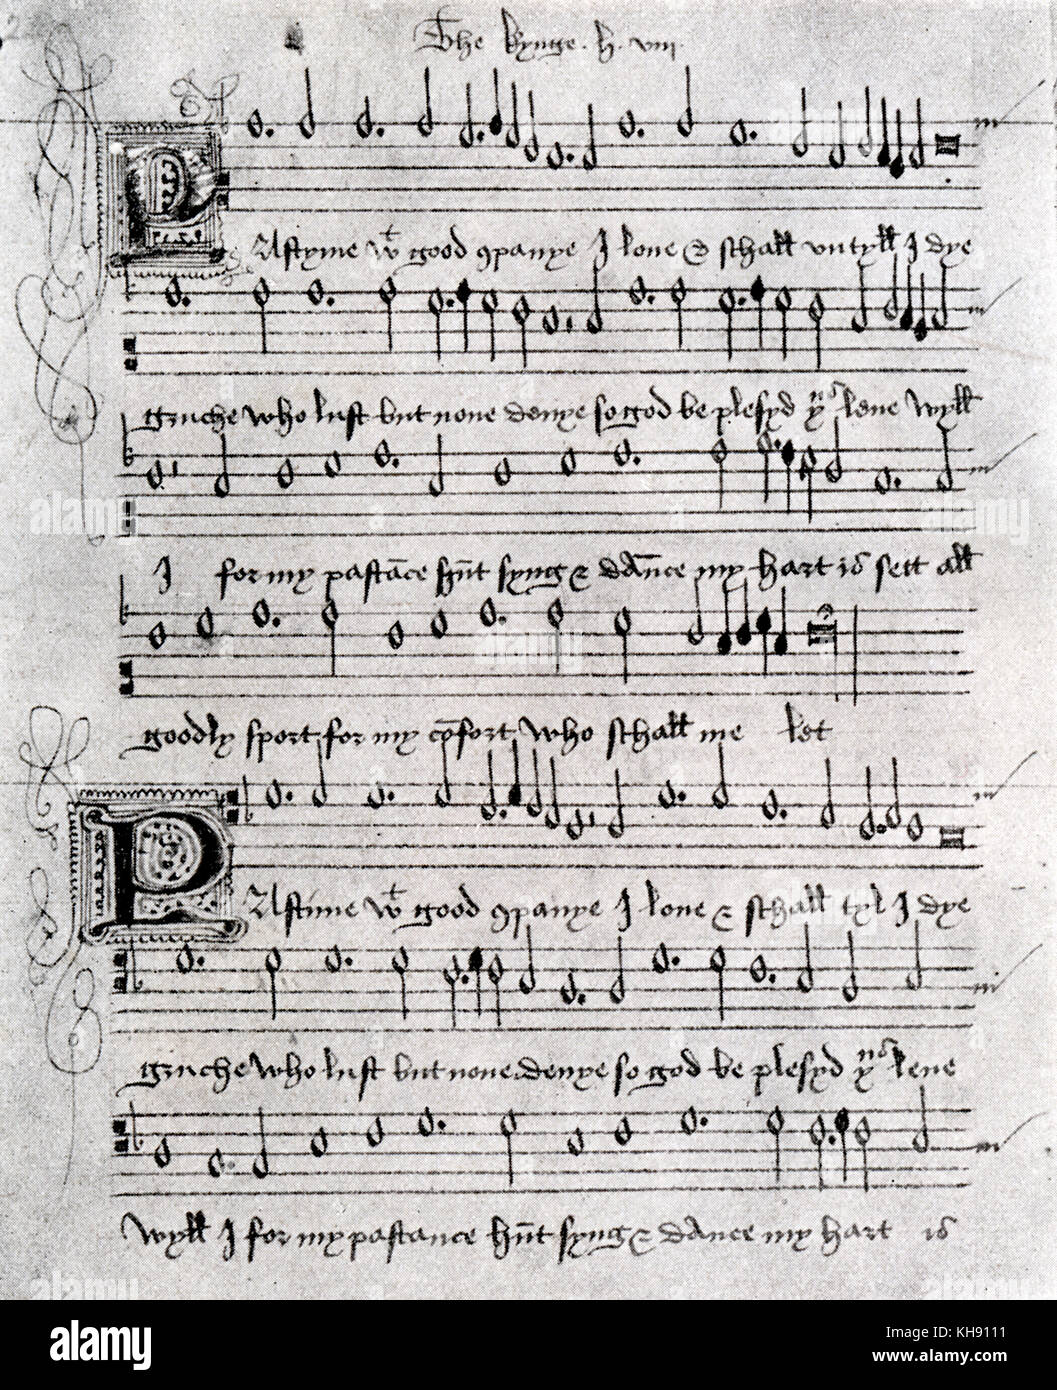 Zeitvertreib mit guter Gesellschaft - Madrigal. Musikalische Kerbe für ein dreiteiliges Madrigal angebliche durch Heinrich VIII. von England geschrieben worden zu sein. 16. Jahrhundert. Im Britischen Museum archiviert. Stockfoto